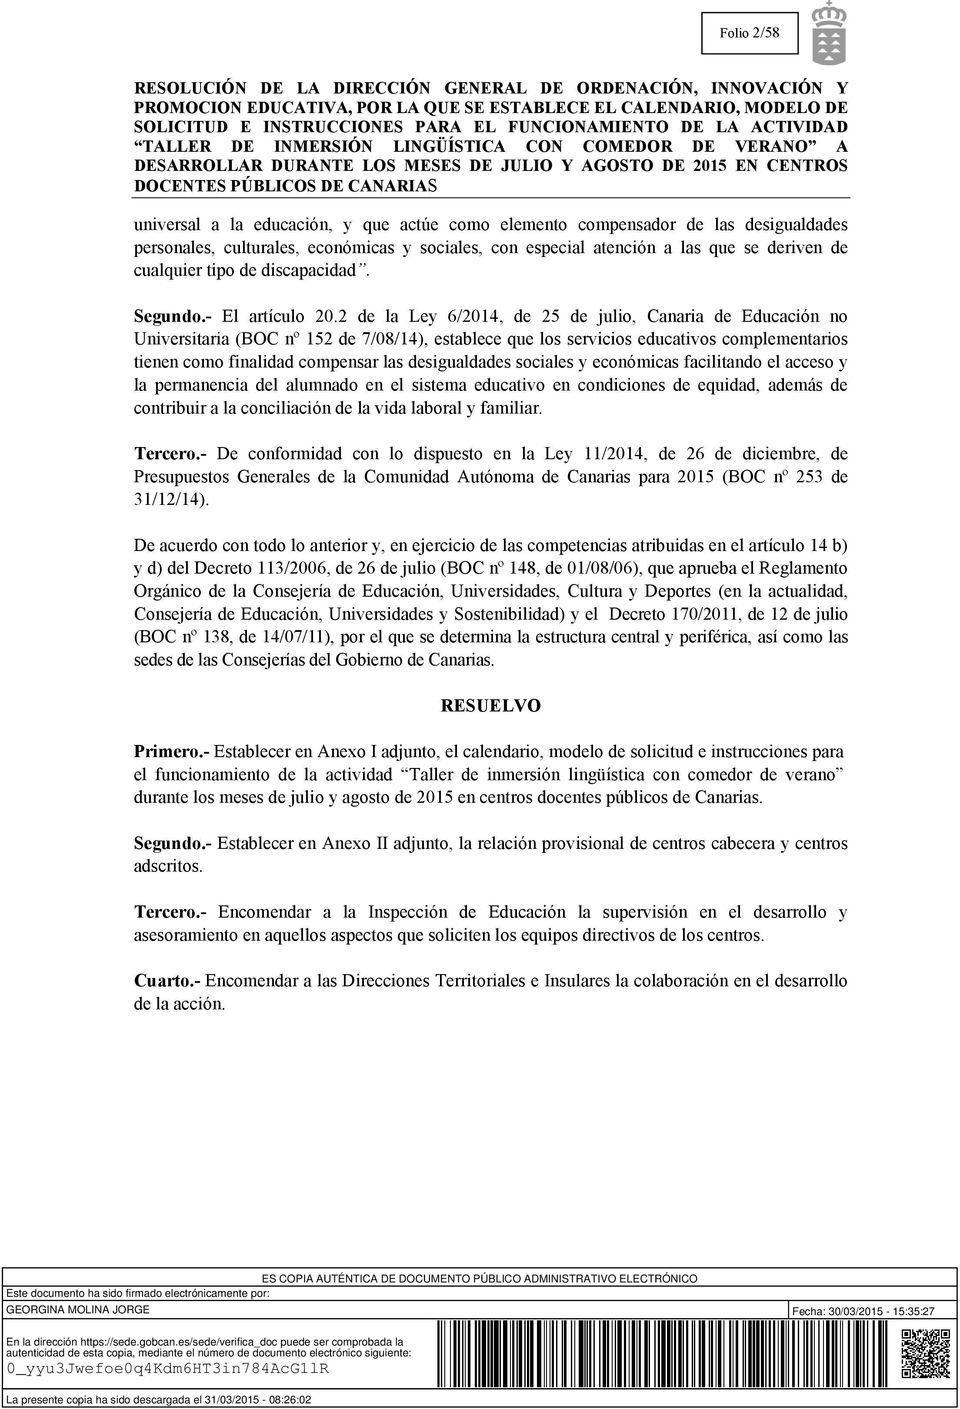 2 de la Ley 6/2014, de 25 de julio, Canaria de Educación no Universitaria (BOC nº 152 de 7/08/14), establece que los servicios educativos complementarios tienen como finalidad compensar las